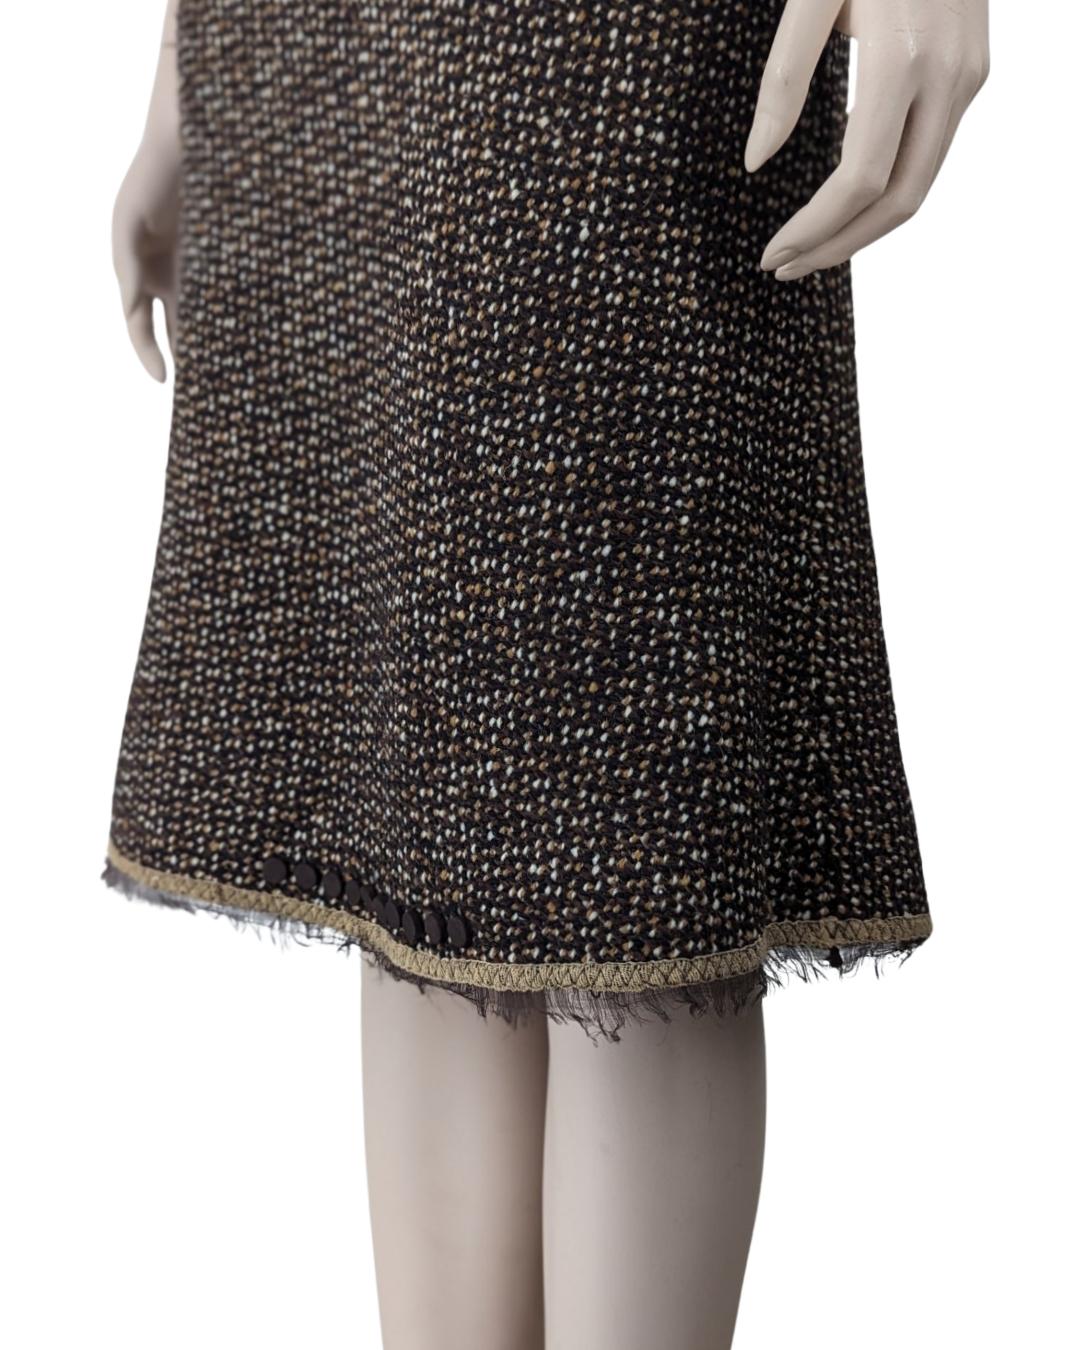 Prada Fall 2000 Runway Tweed Dress by Miuccia Prada For Sale 5